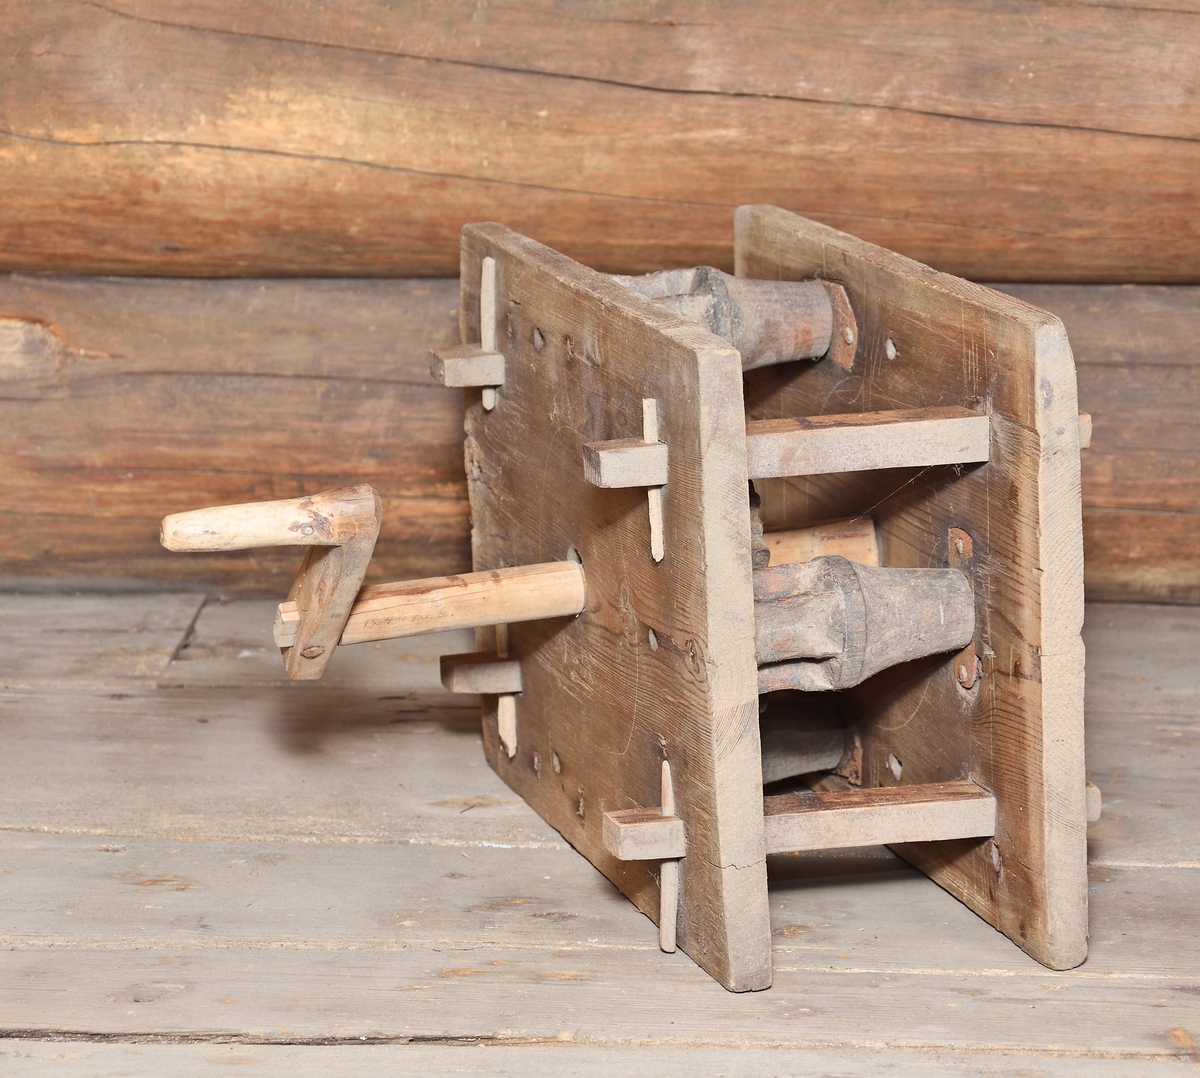 Geskär av trä, (A) tvinningsmaskin, för repslageri, med fäste för tre kardeler. Drivkonstruktion sammanfogad i två rektangulära plana plattor med fyra slåar. Inuti ett större kugghjul som drivs med en vevaxel. Det större kugghjulets kuggtänder driver i sin tur tre mindre kugghjul för högre varvtal. De tre mindre kugghjulen är fästa på svarvade flaskformade nav som driver tre järnkrokar i ändarna. De tre järnkrokarna fungerar som fästen för kardeler. Till geskär hör en platt konformad tvinnsticka av trä (B) med tre skåror, två på ovandelen och en på underdelen.

